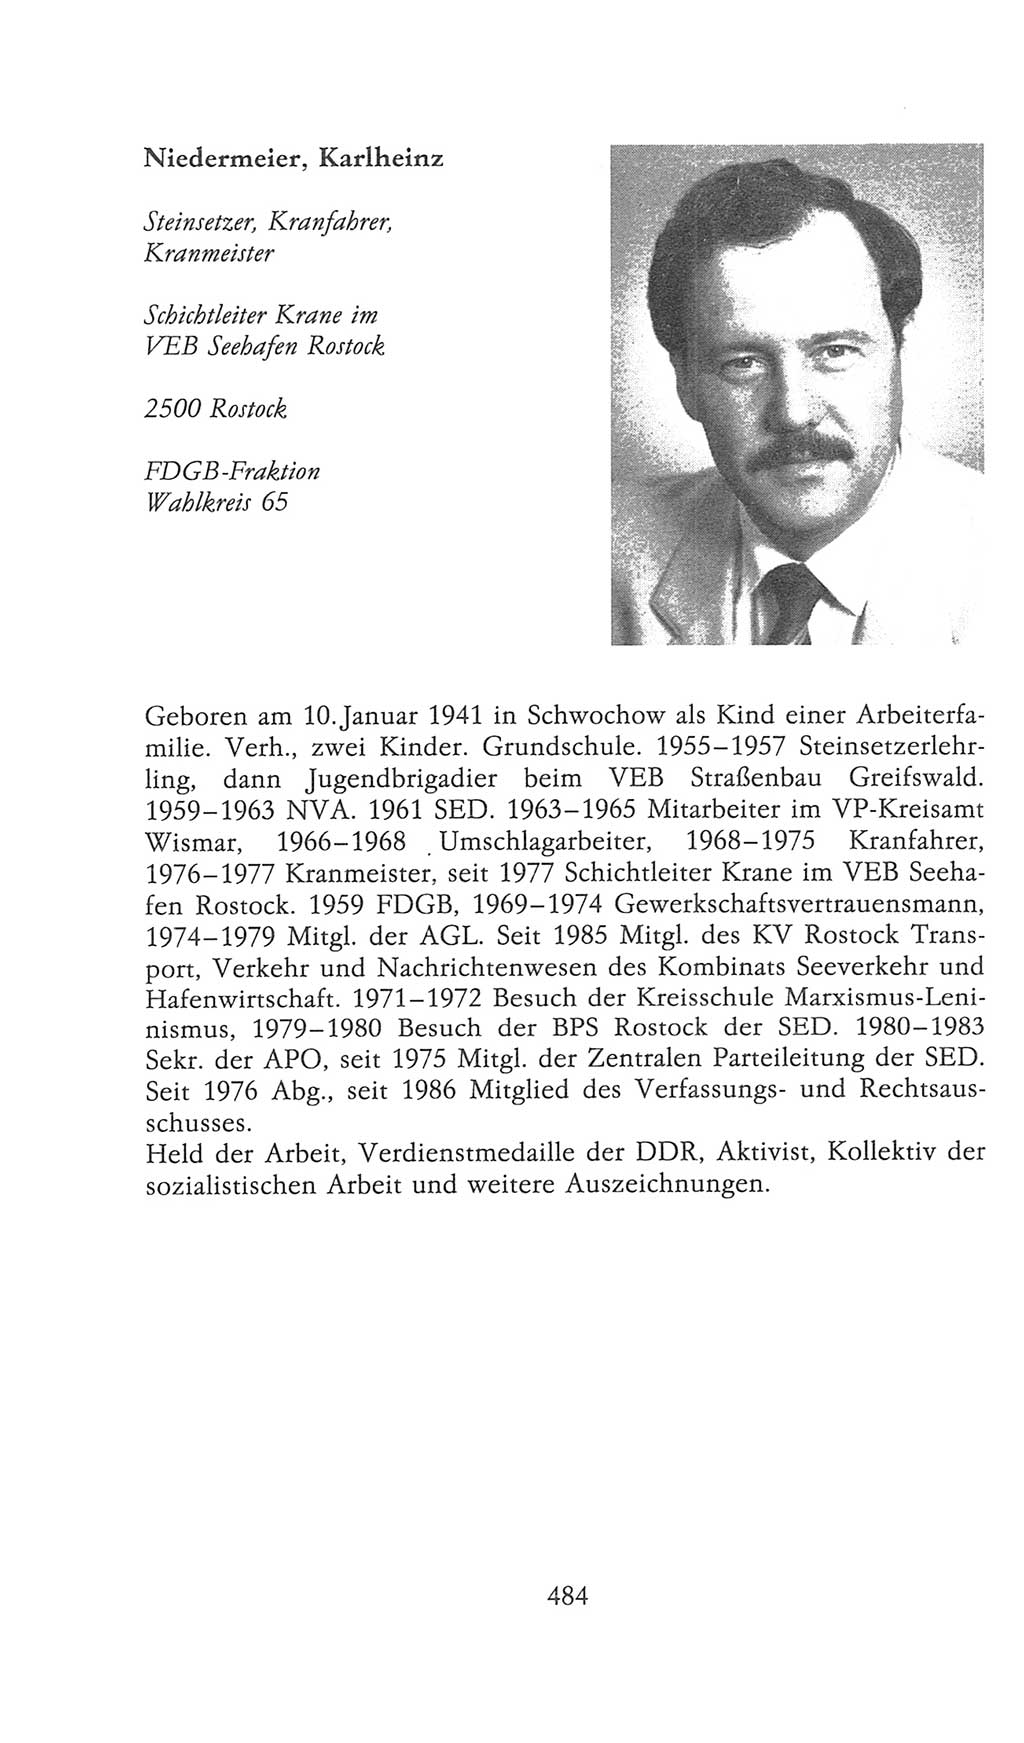 Volkskammer (VK) der Deutschen Demokratischen Republik (DDR), 9. Wahlperiode 1986-1990, Seite 484 (VK. DDR 9. WP. 1986-1990, S. 484)